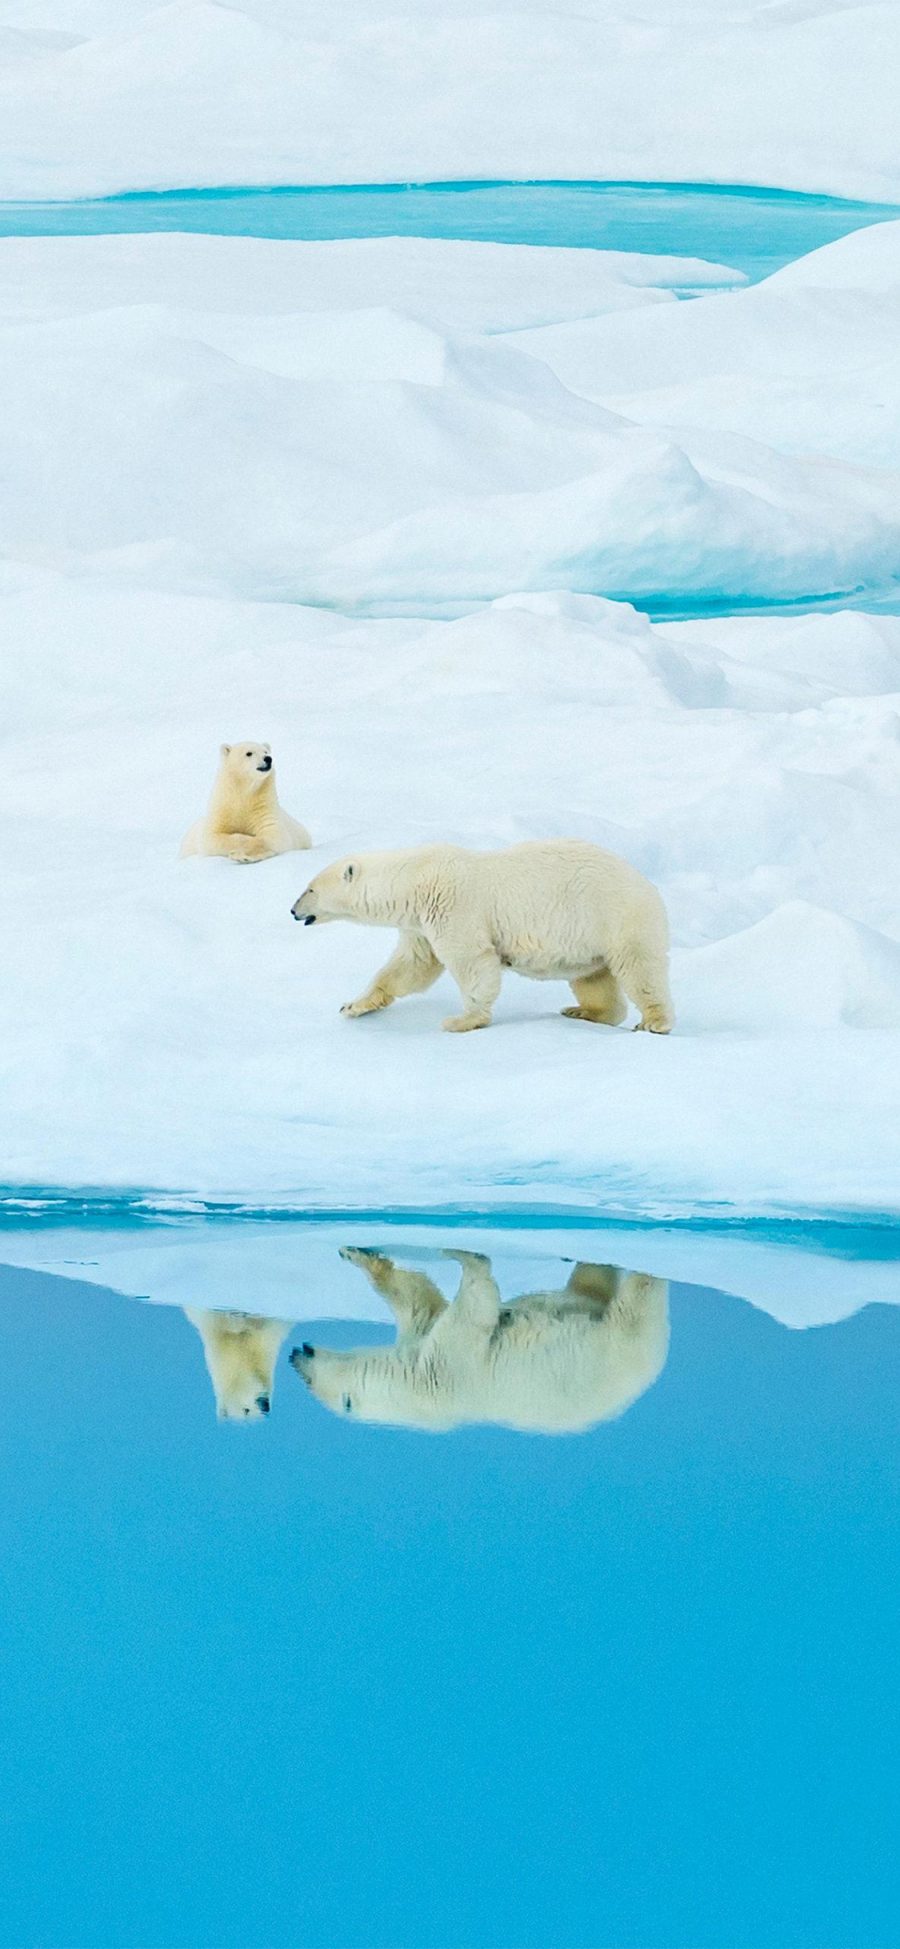 [2436×1125]北极熊 倒影 冰川 海洋生物 苹果手机壁纸图片